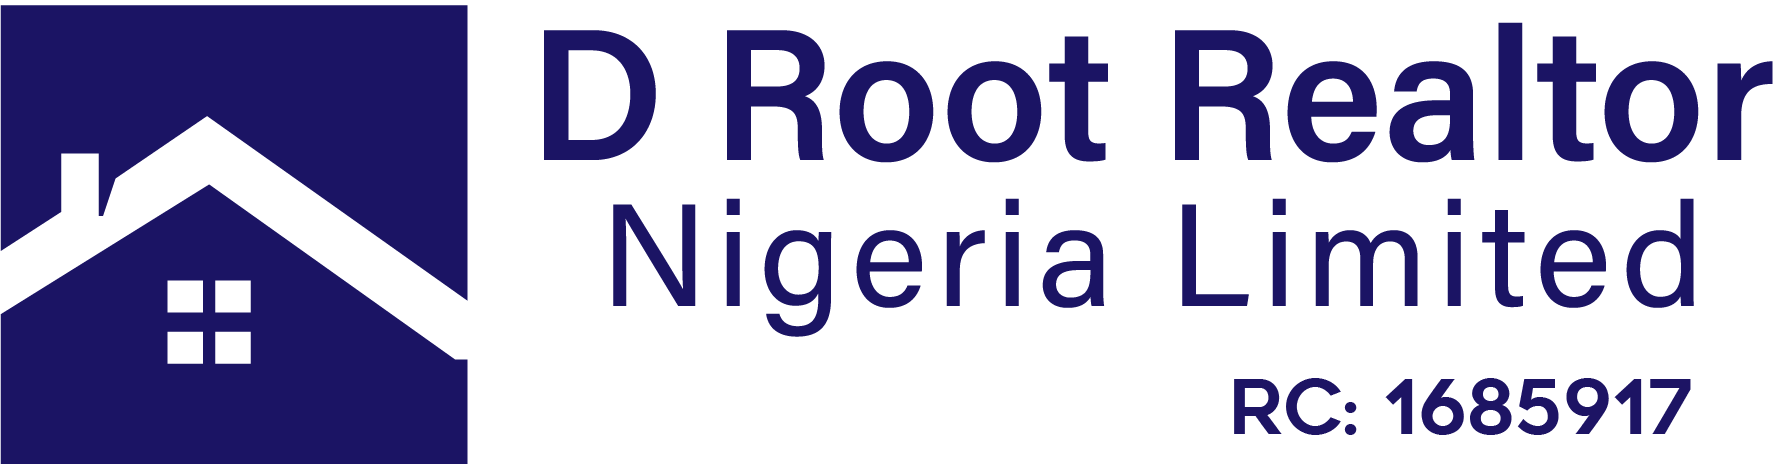 D root